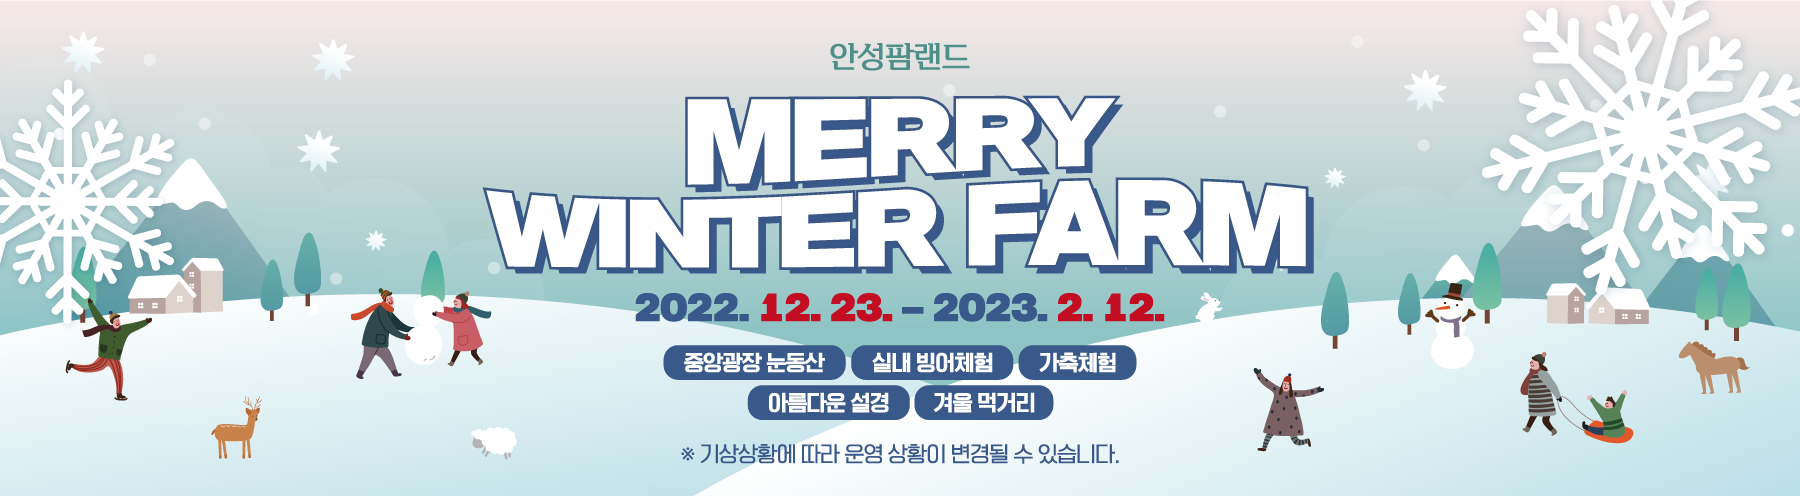 안성팜랜드
Merry Winter Farm
2022.12.23~2023.02.12